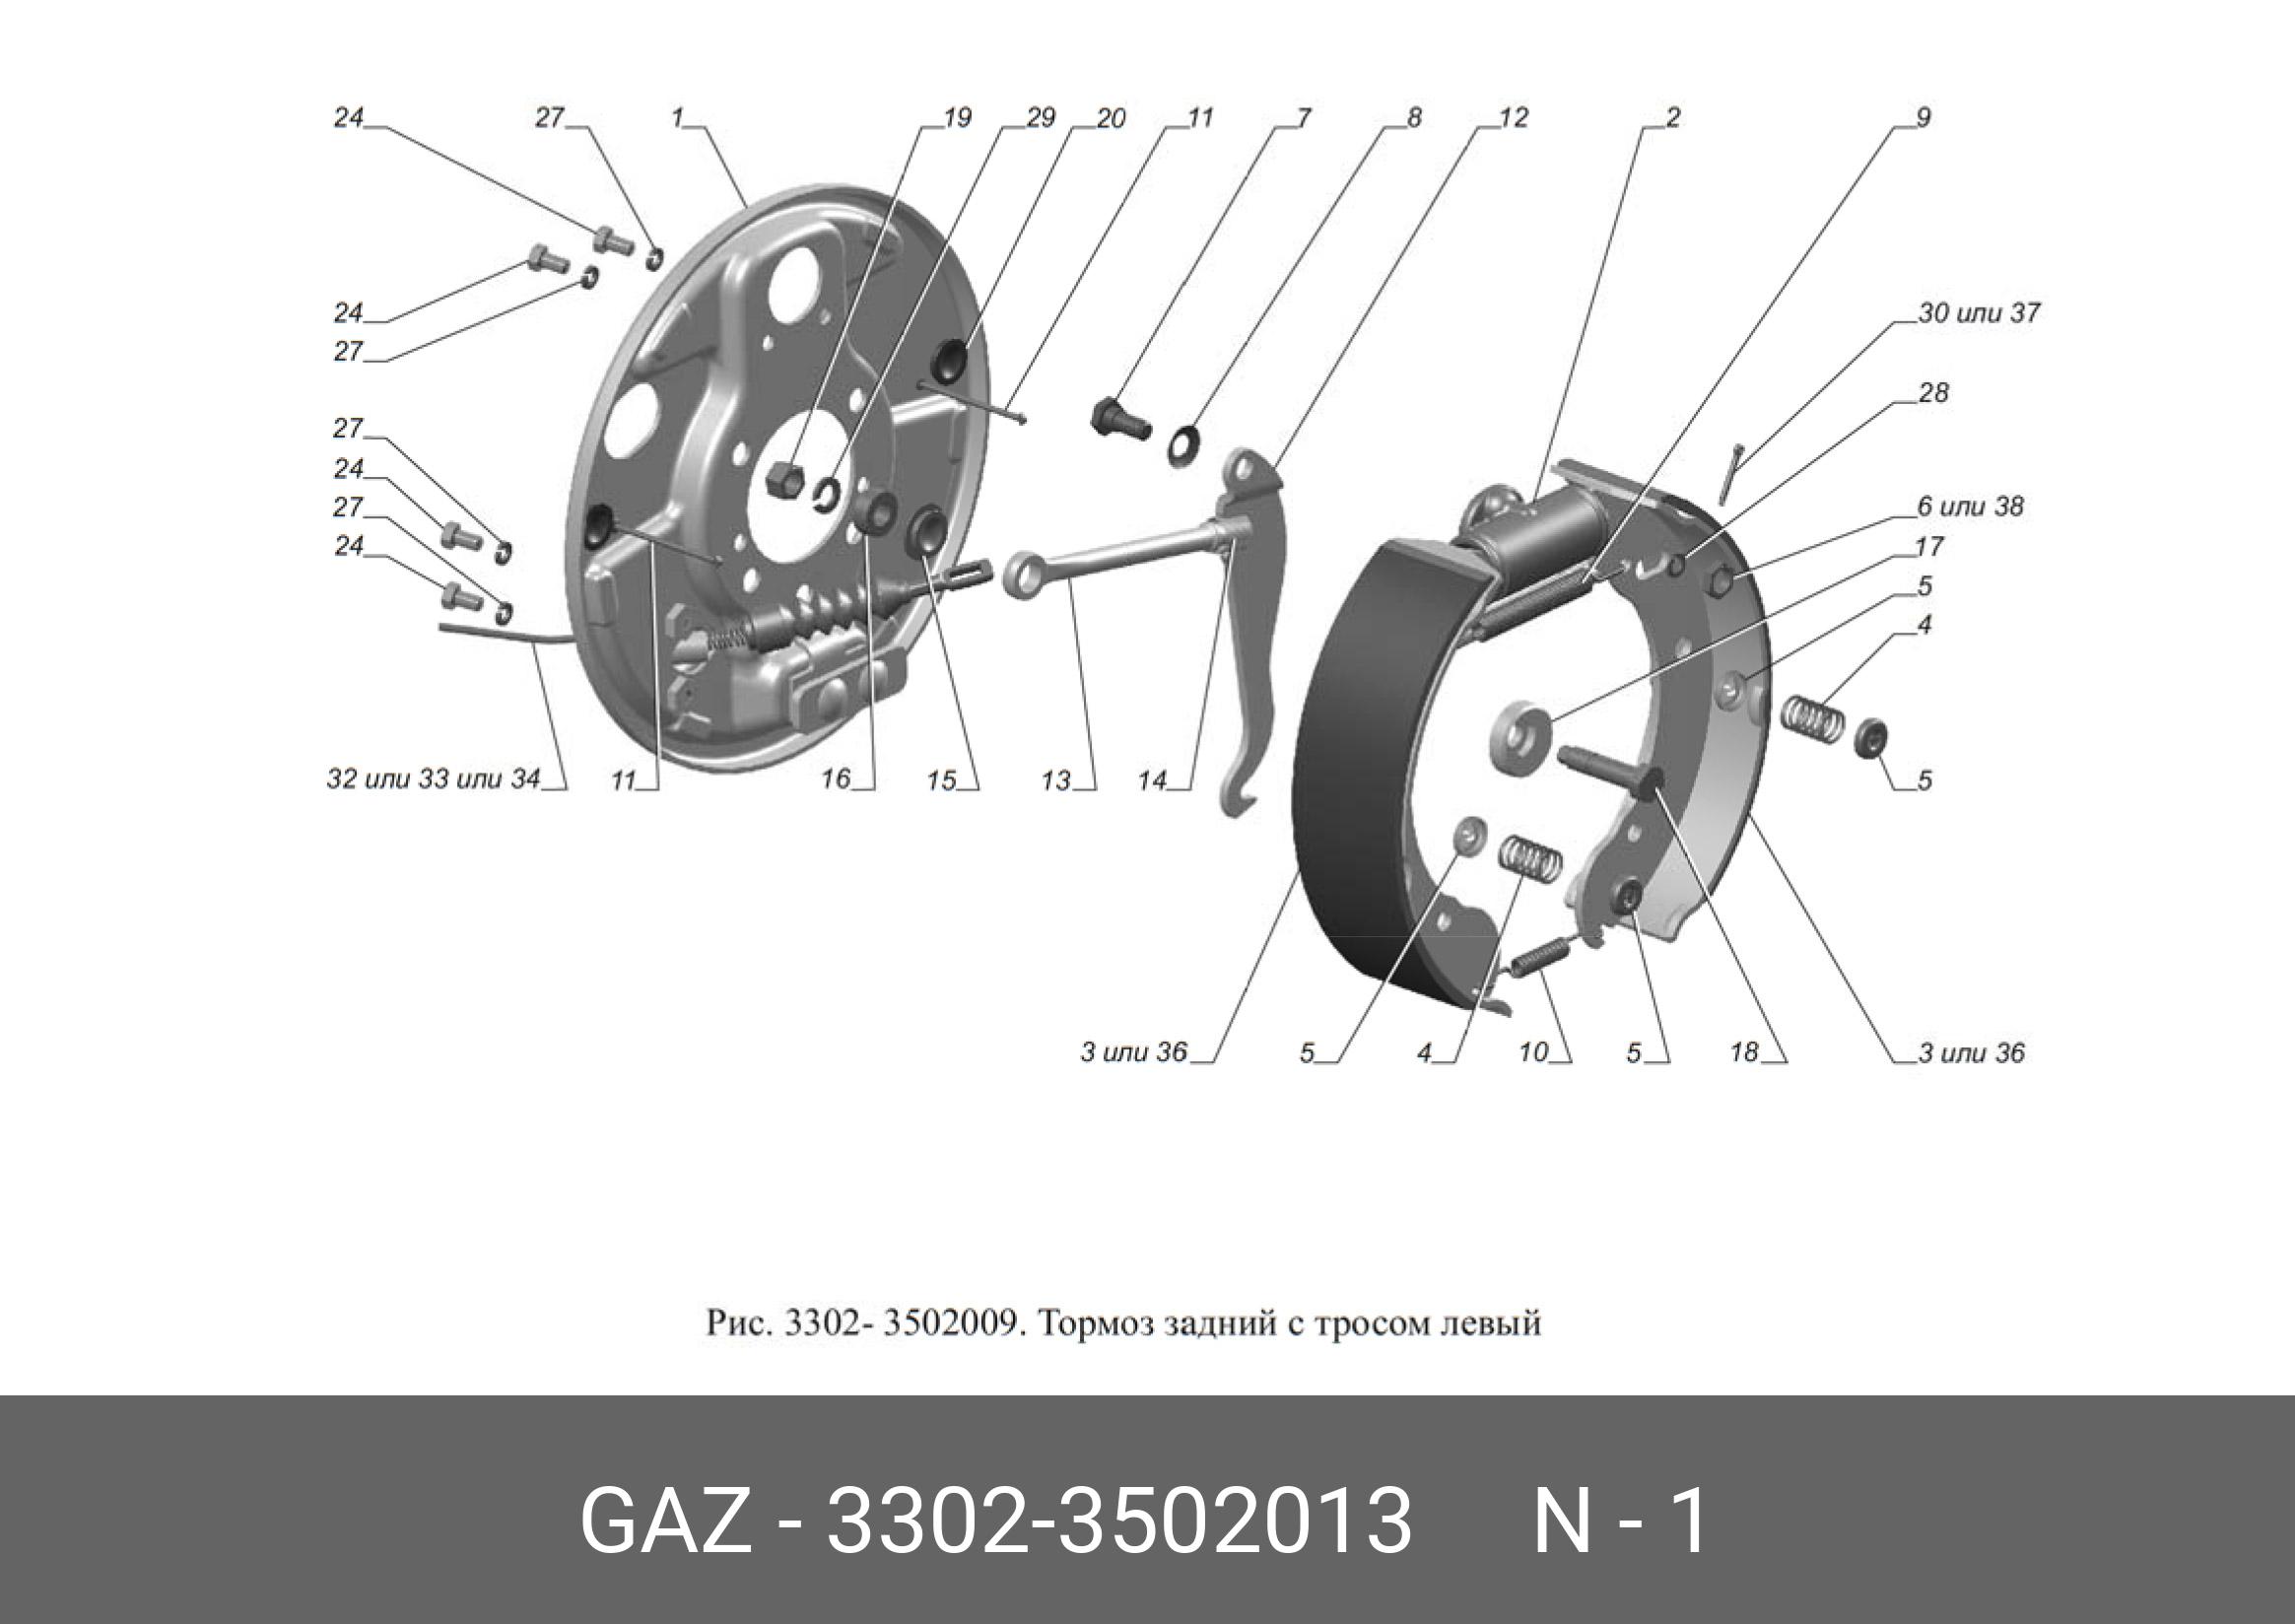 Опорный диск задних тормозных колодок Газель  левый голый - GAZ 3302-3502013